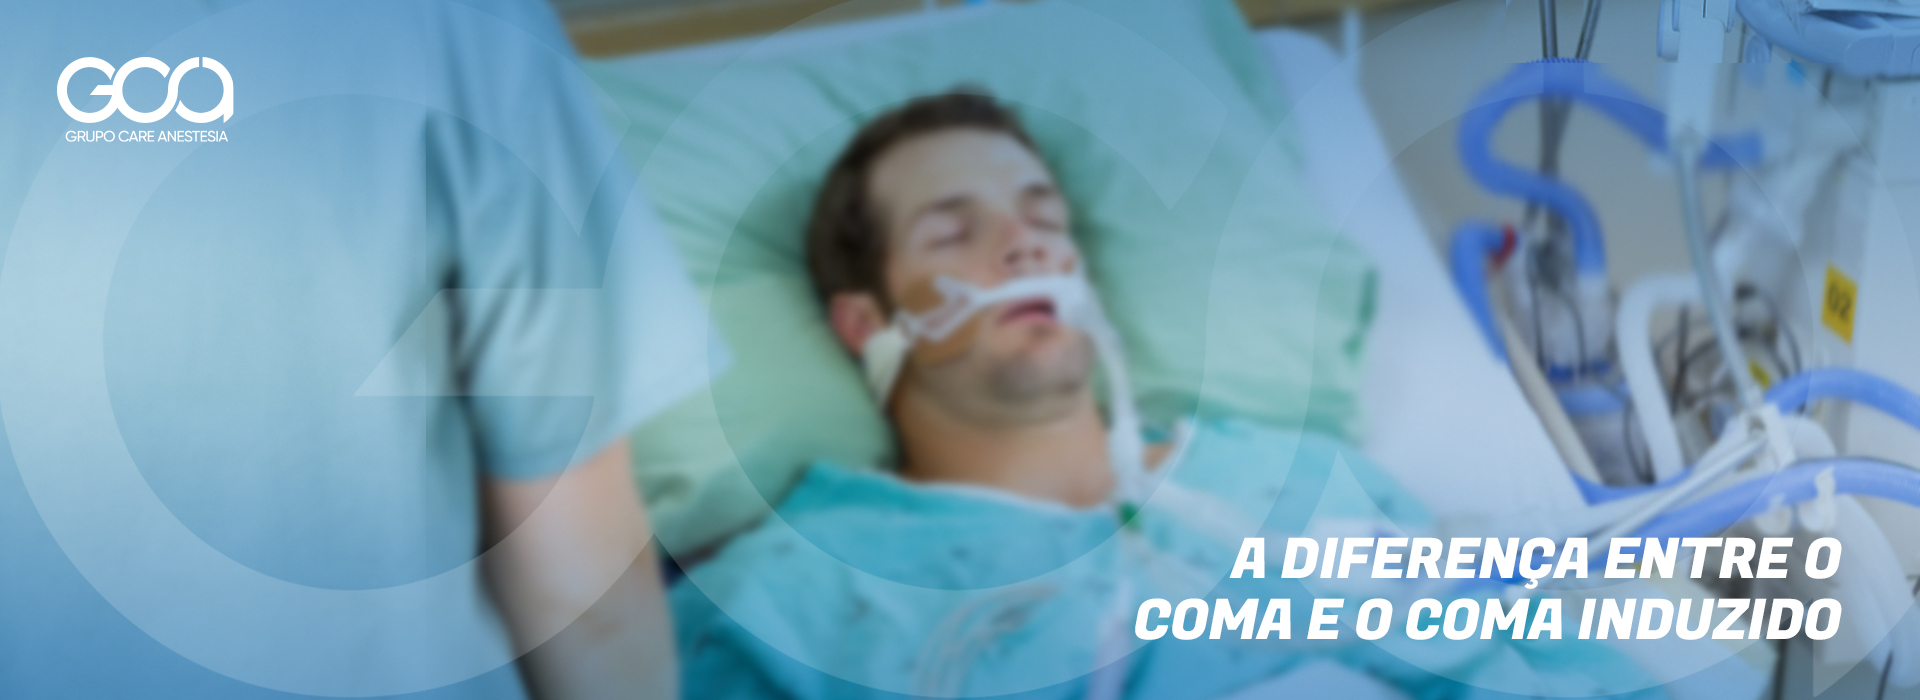 Diferença entre “coma” e “coma induzido” - Grupo Care Anestesia